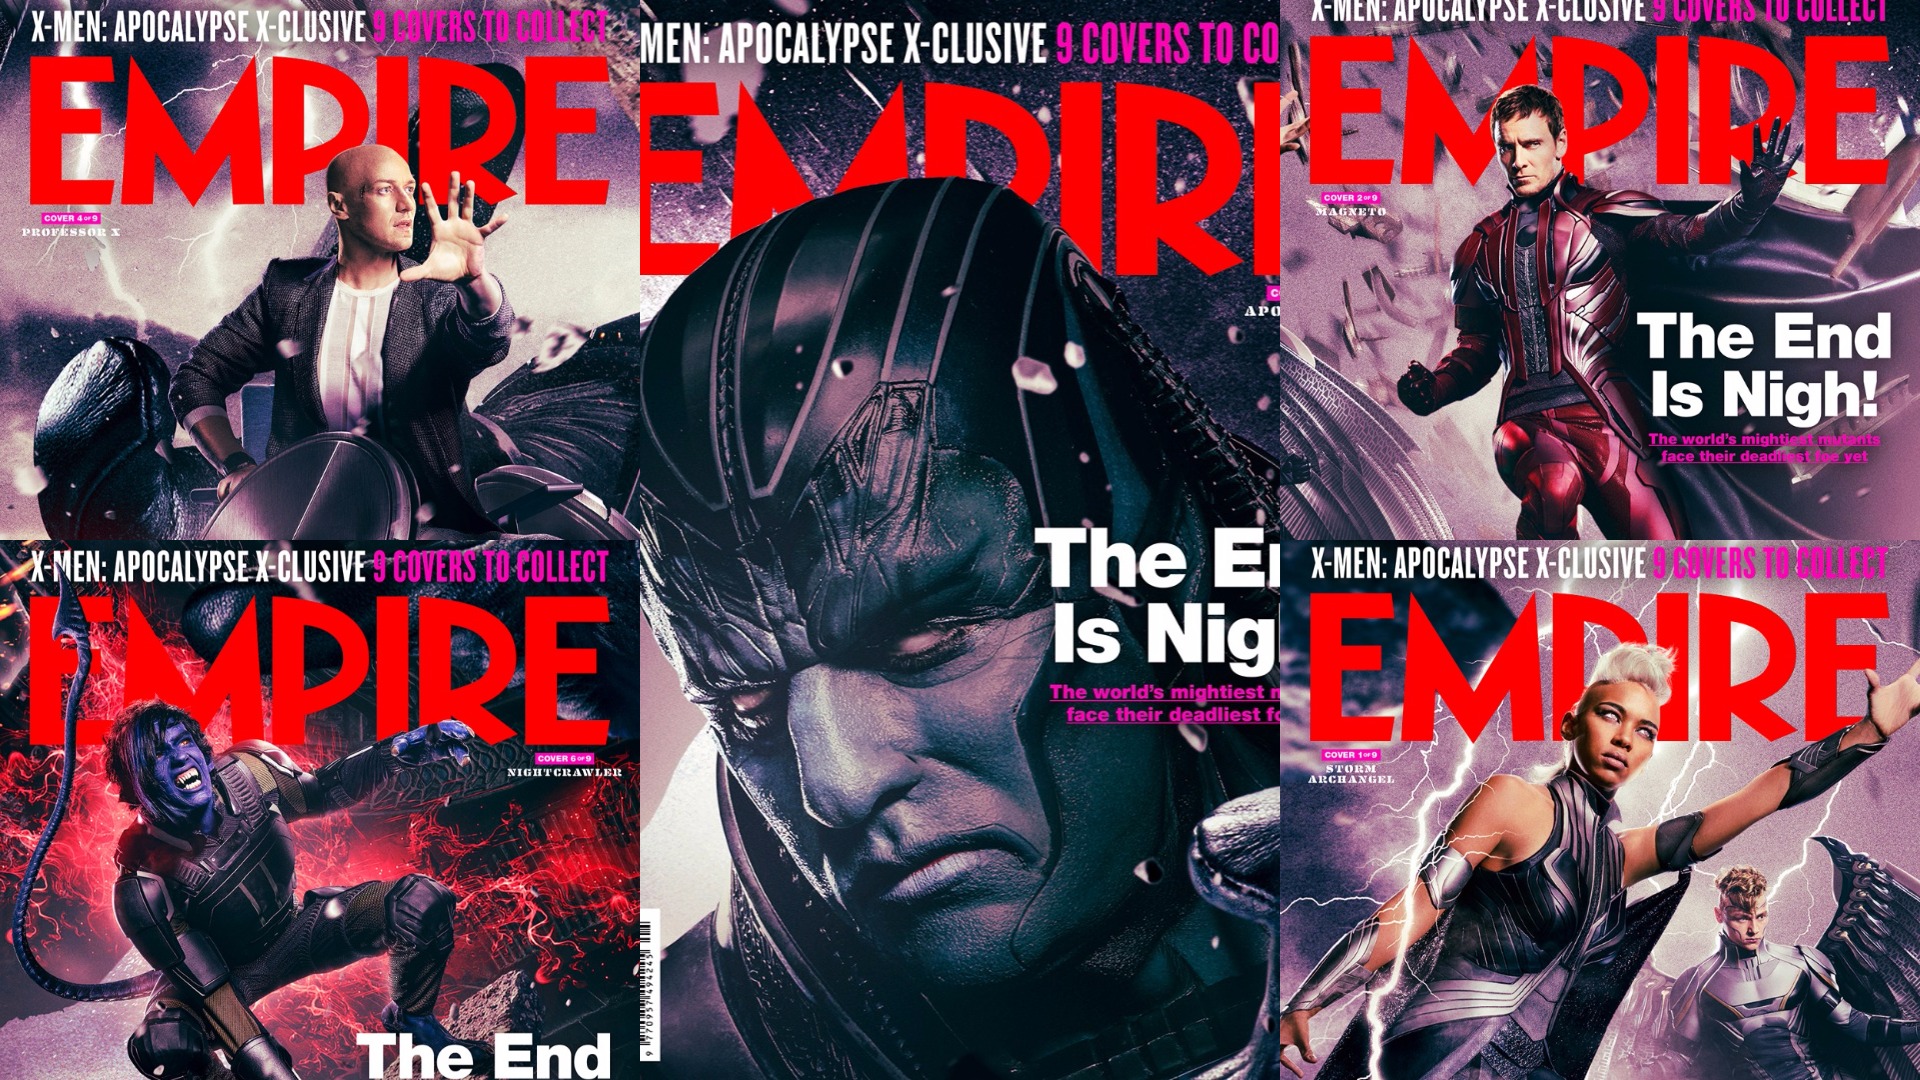 Empire Magazine covers for X-Men Apocalypse